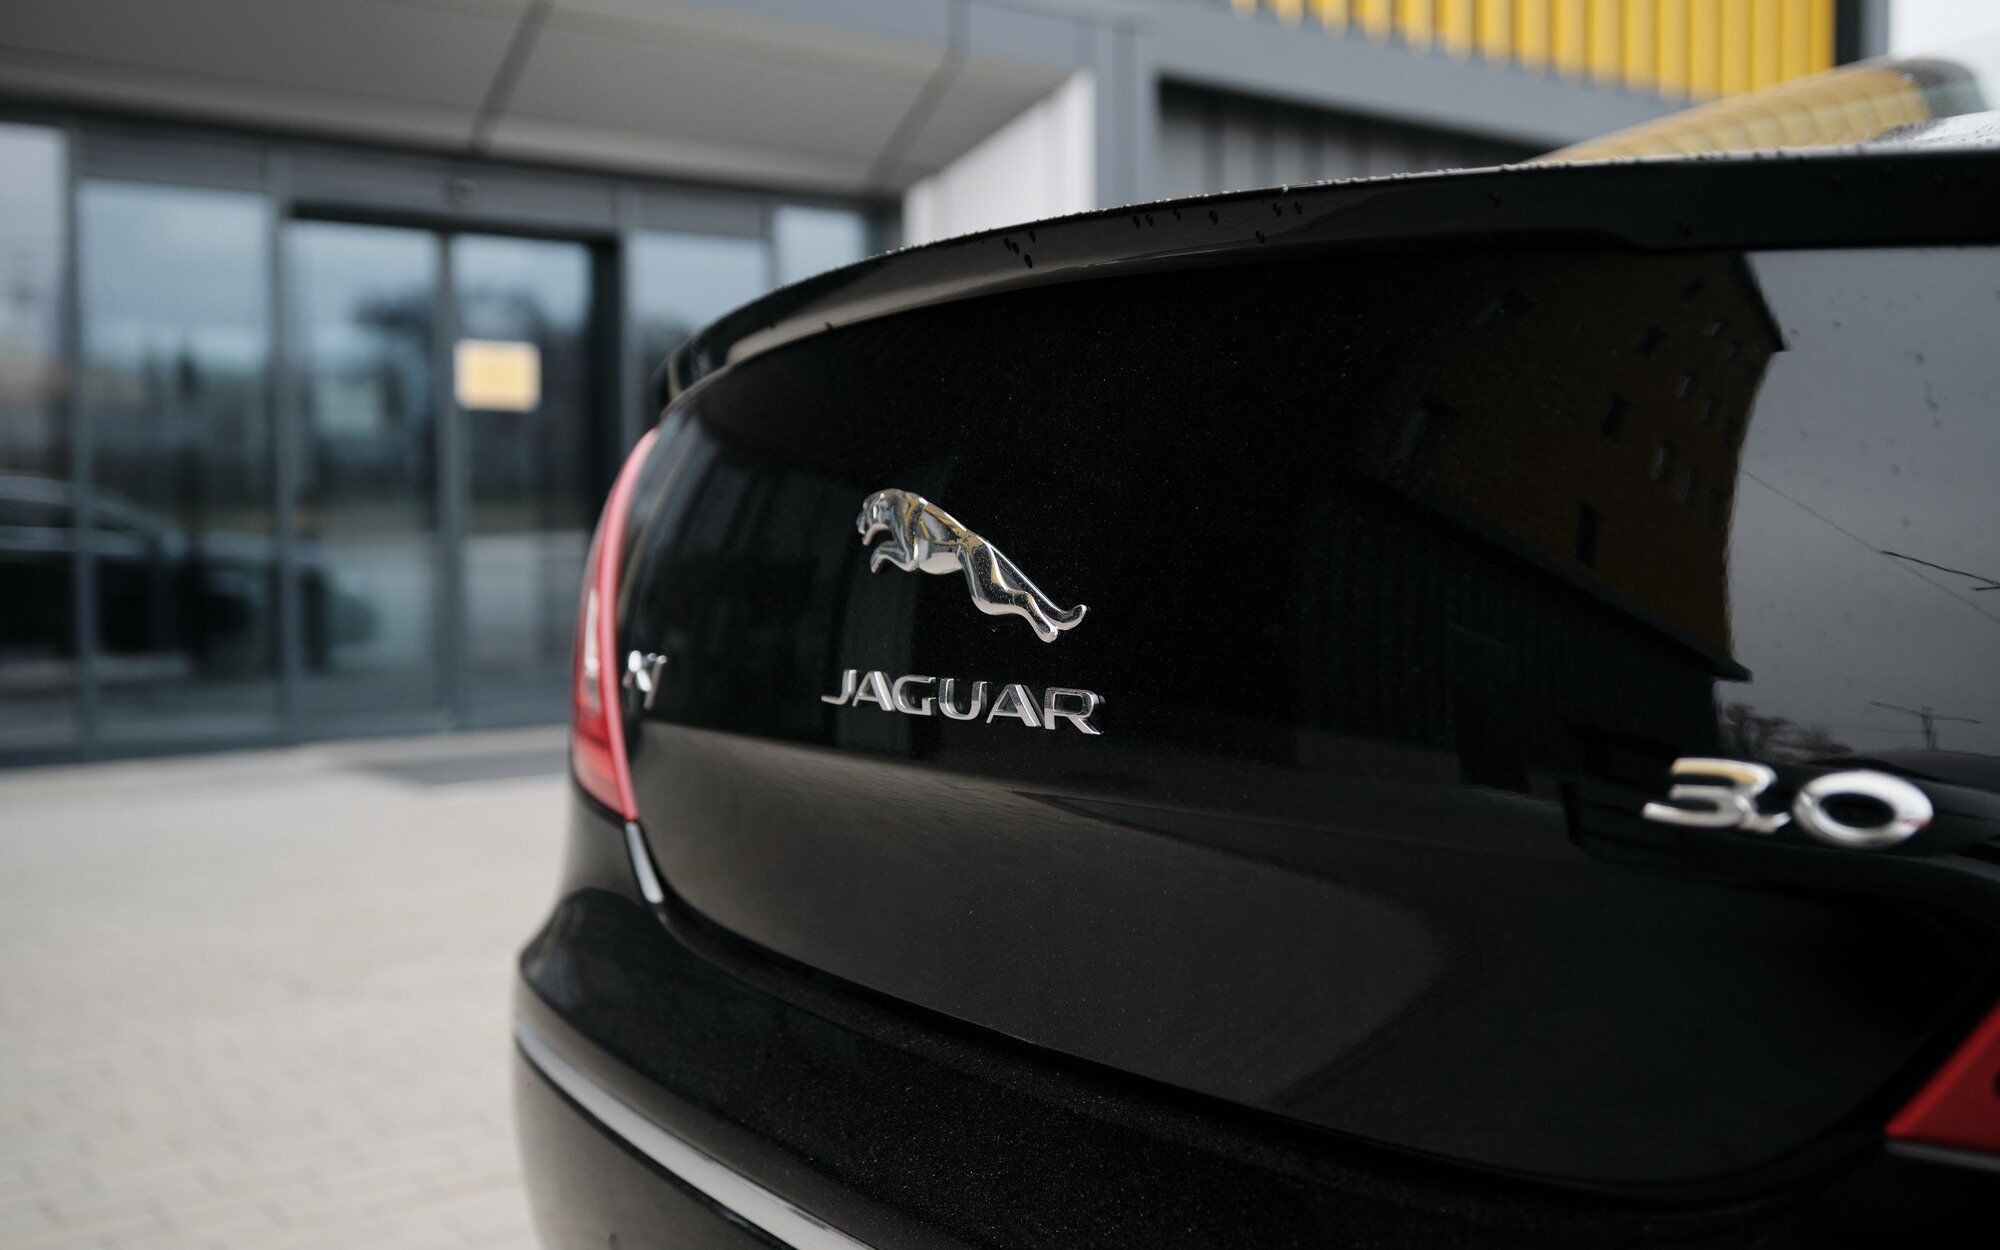 "ДемСокира" перетворить Jaguar XJ донора на 20 човнів для спецпризначенців